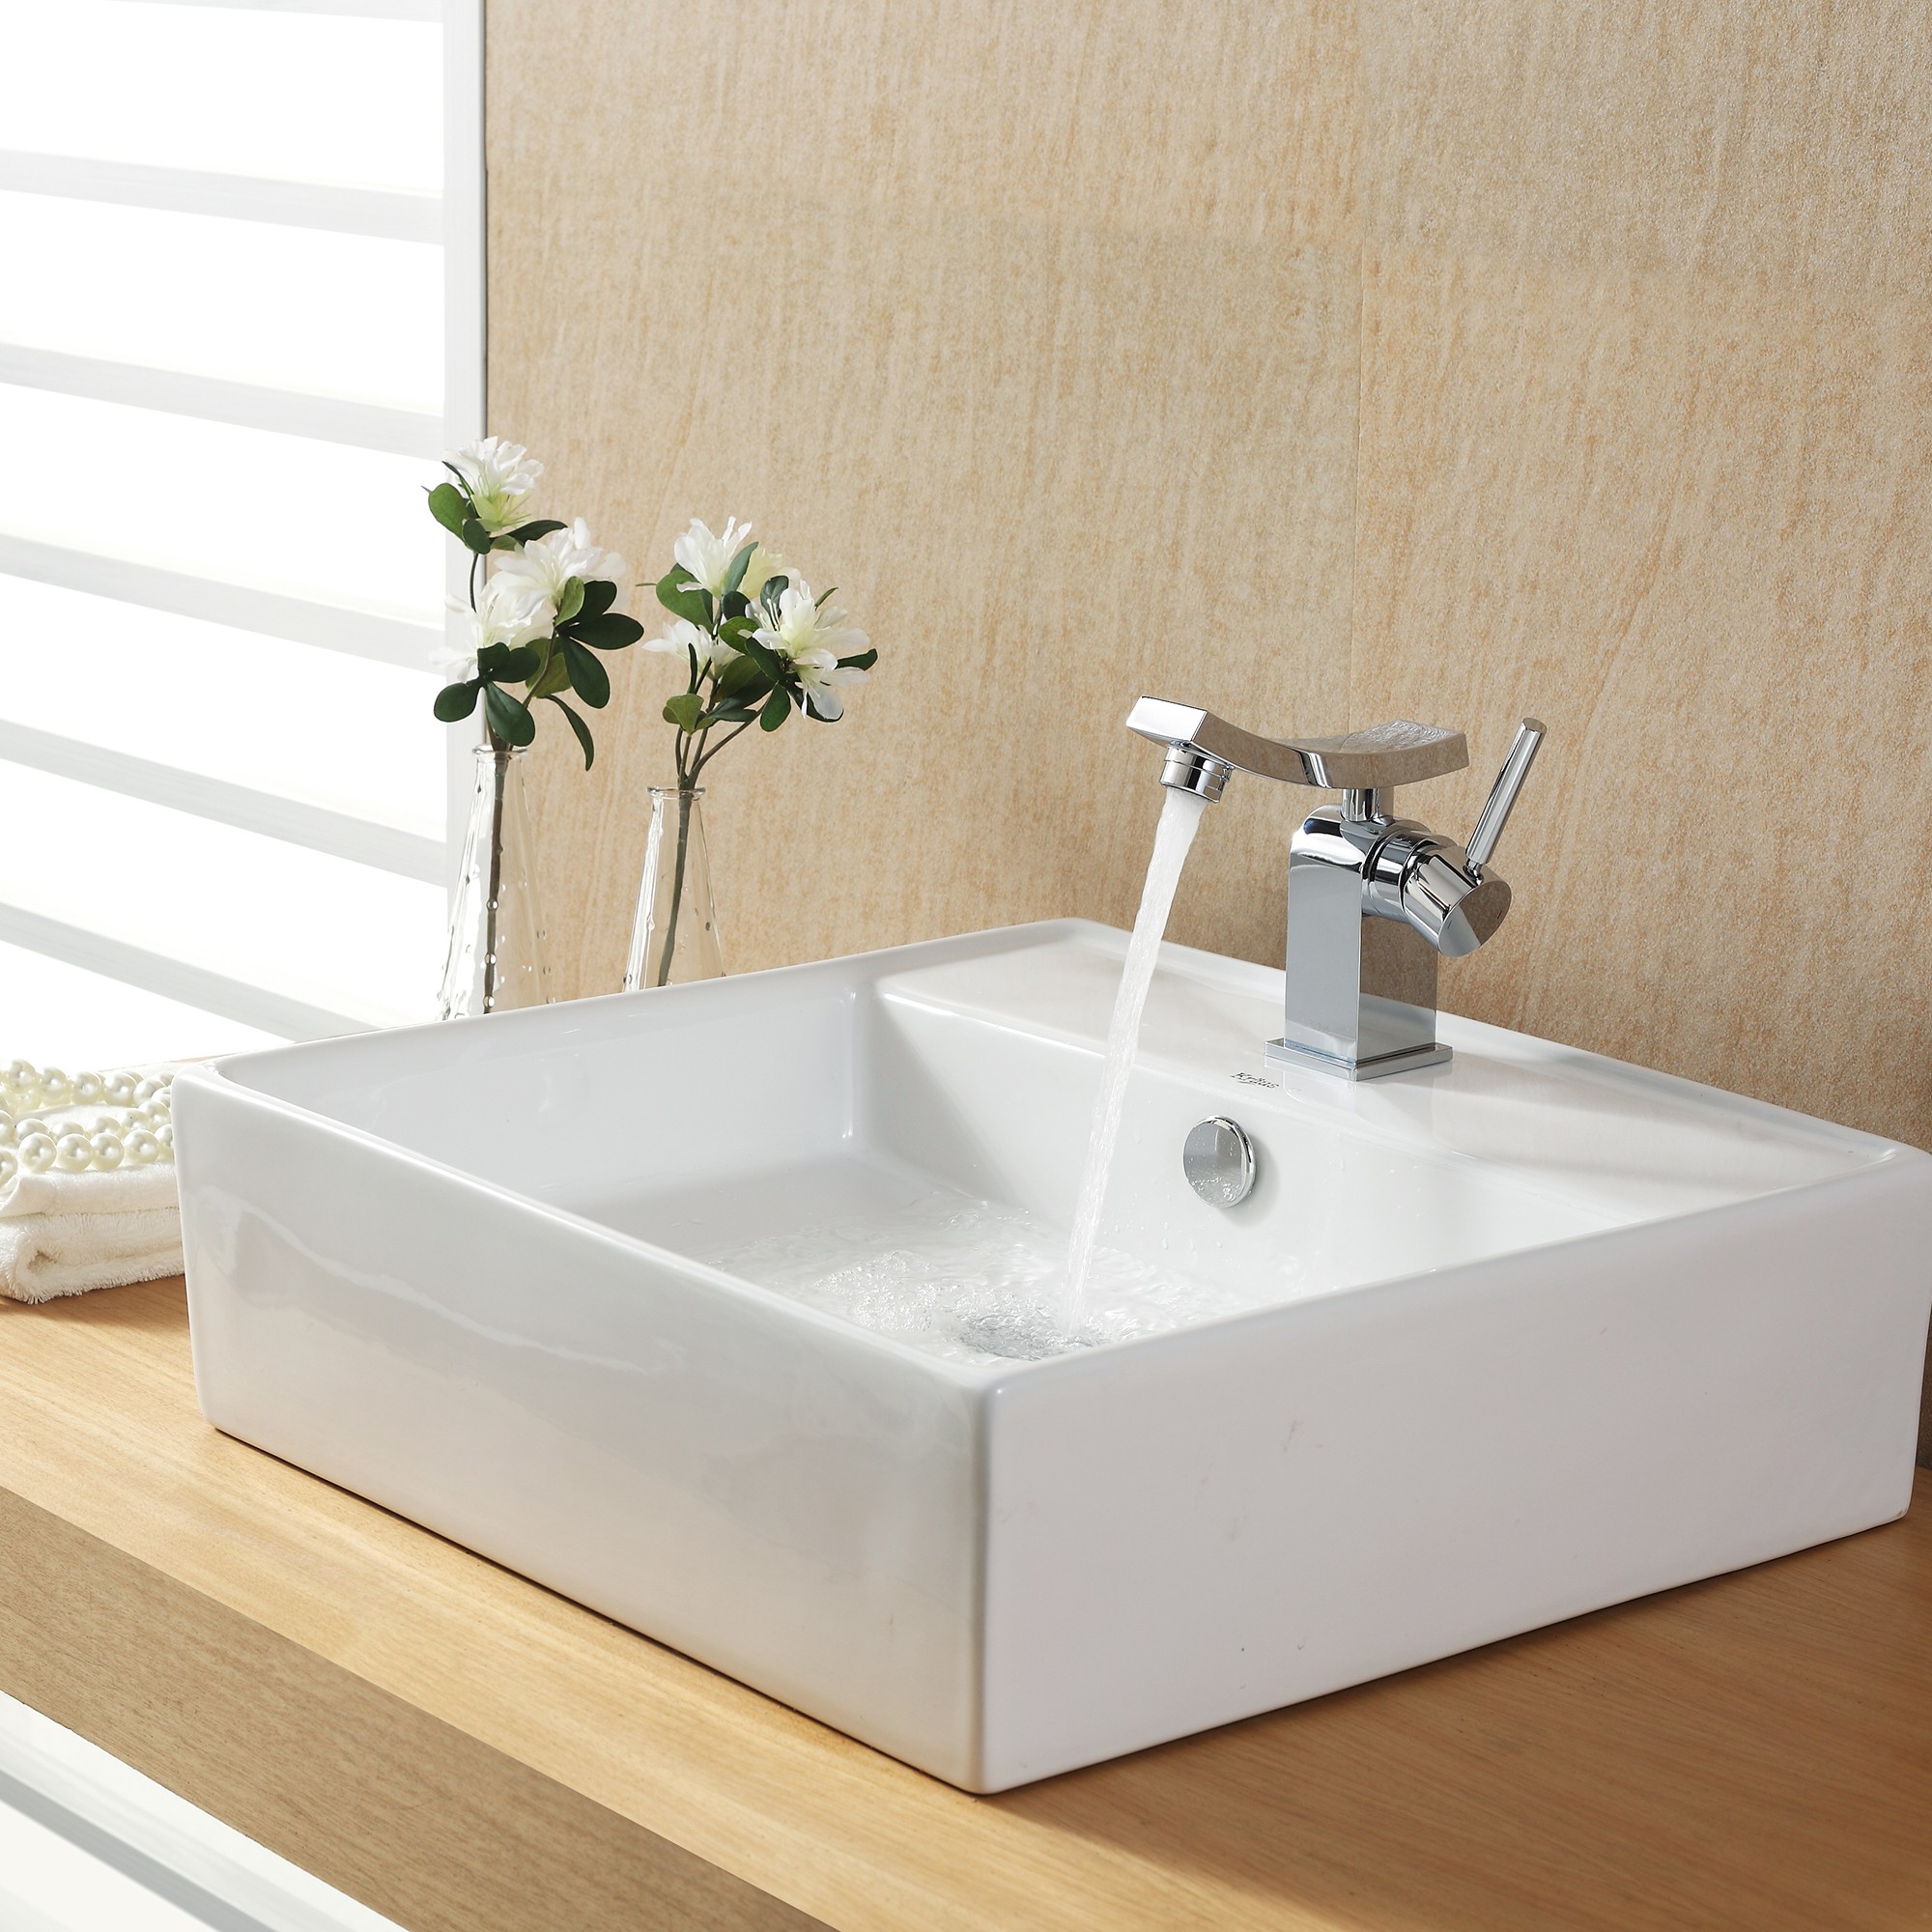 White Square Ceramic Sink Design Ideas For Bathroom